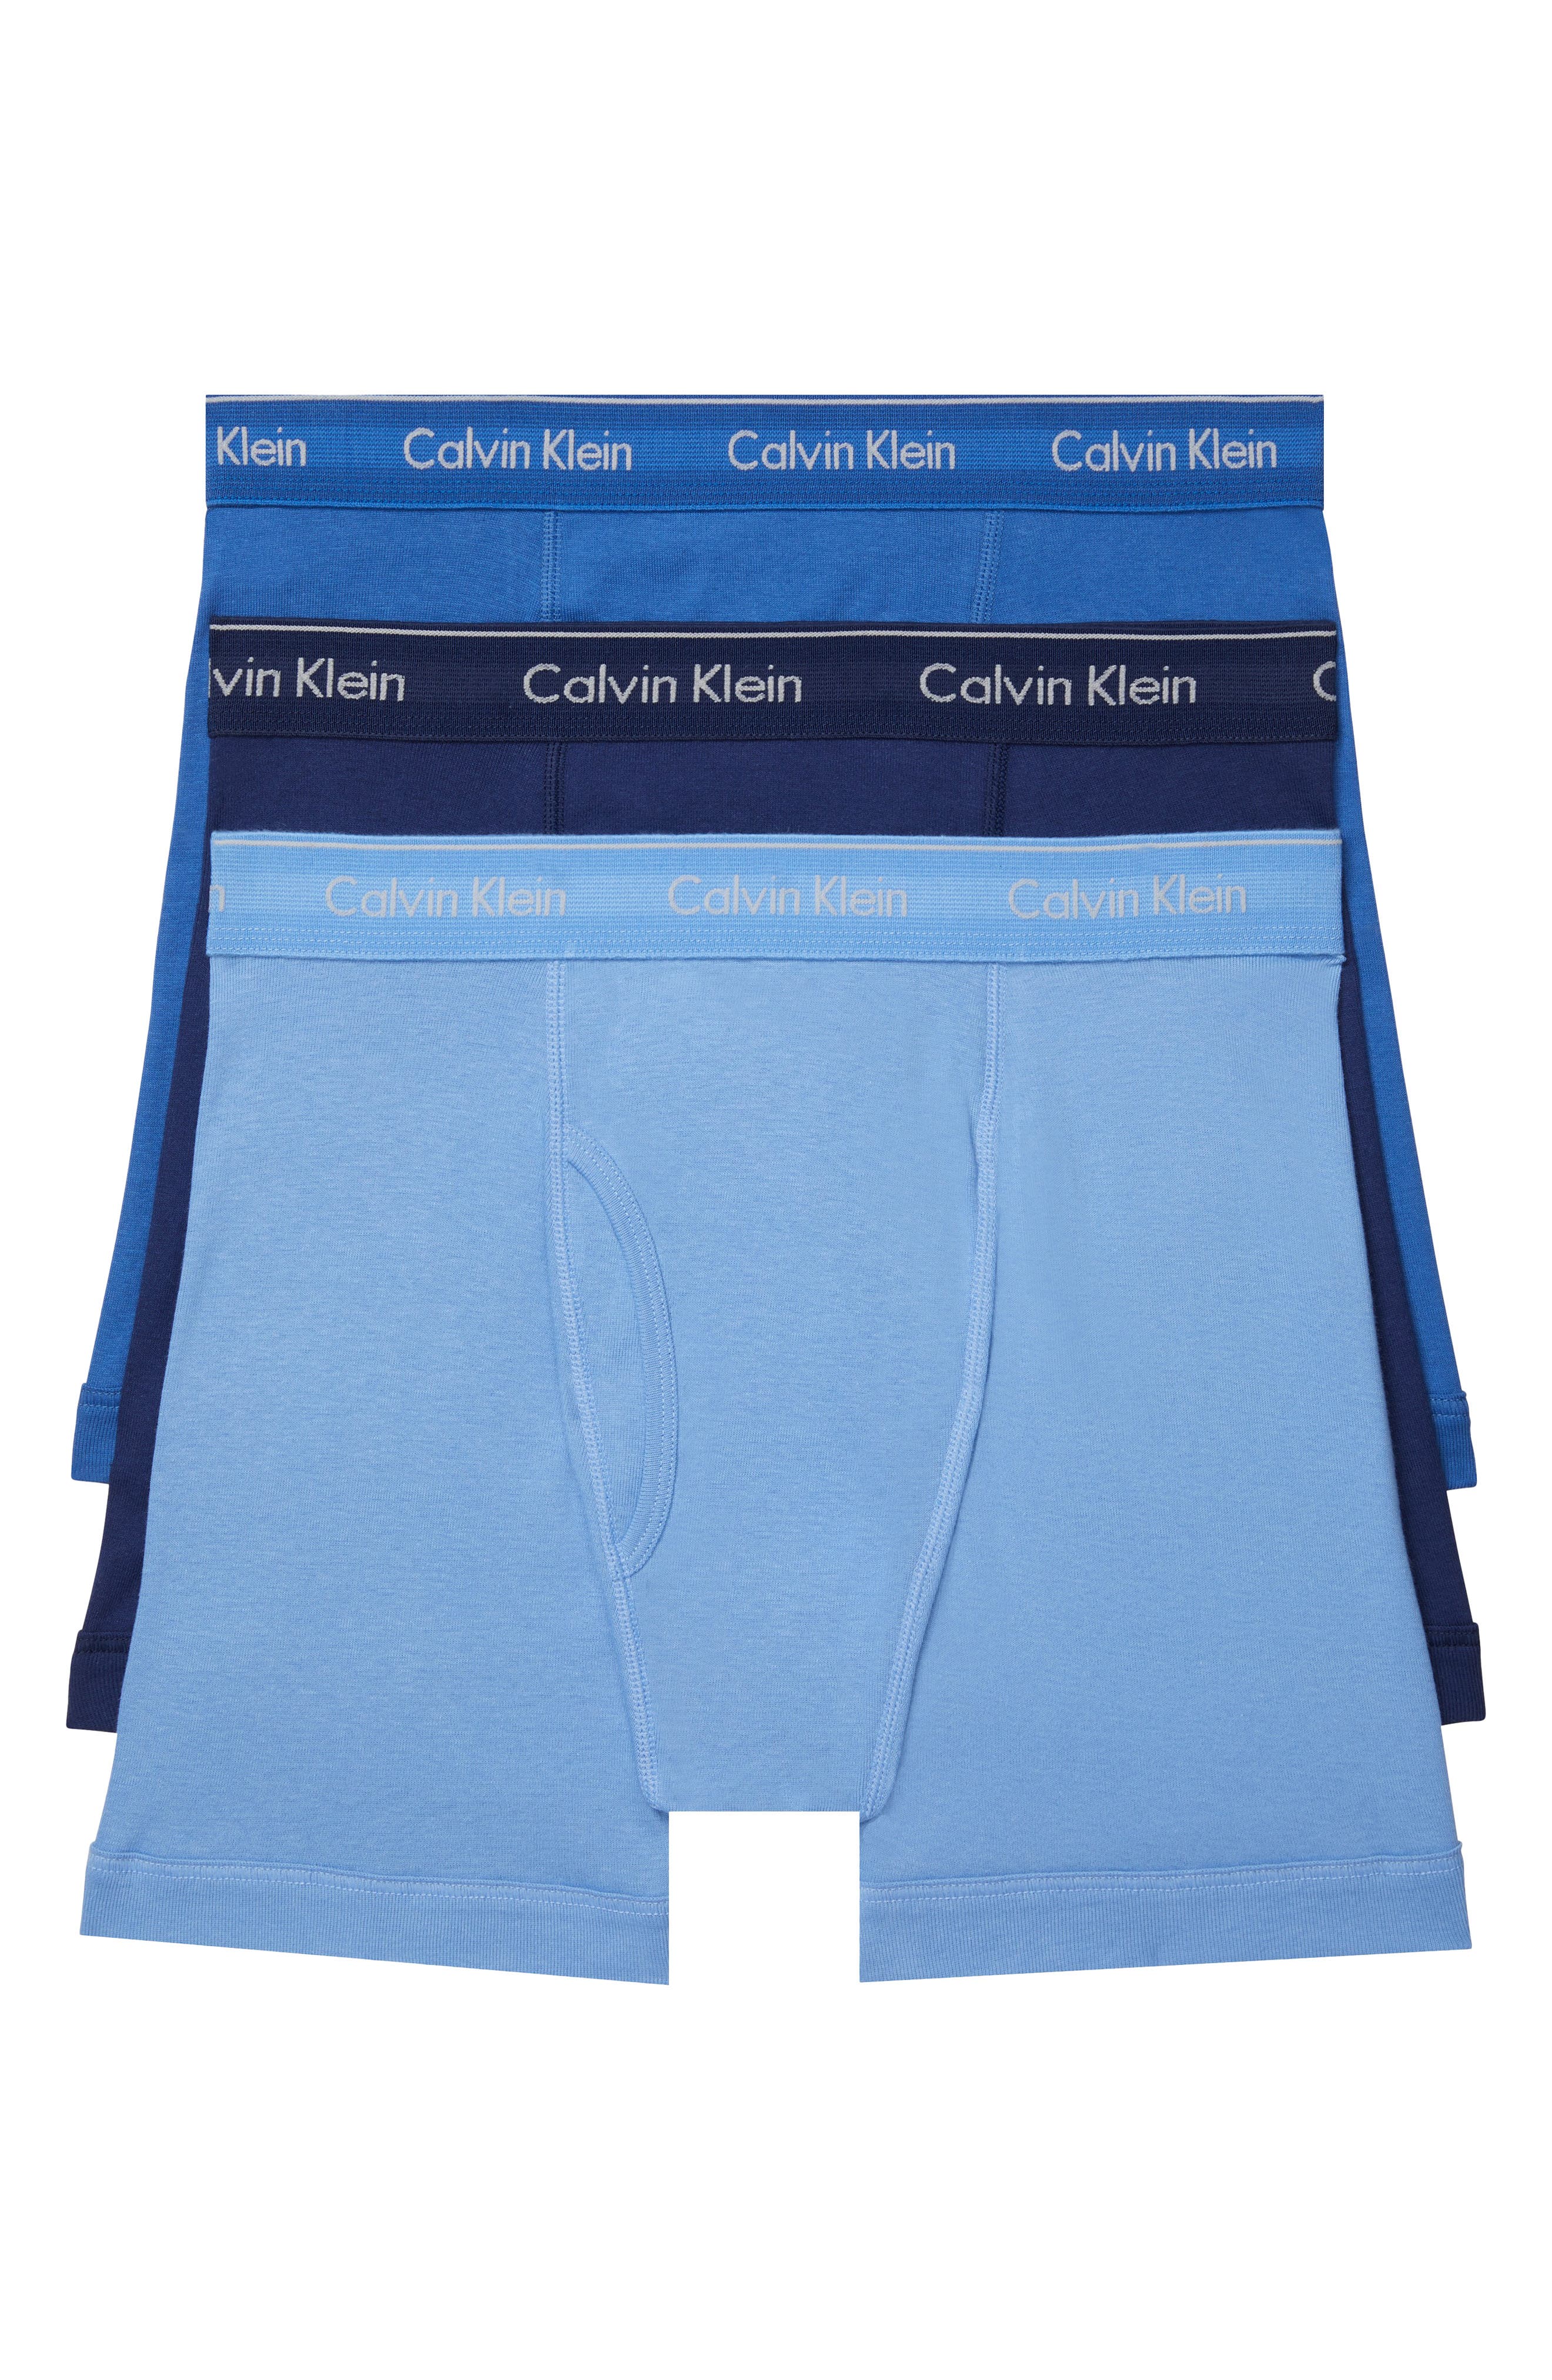 Mens Clothing Underwear Socks GANT Teens Teen Boys 3-pack Graphic Socks in Blue for Men 